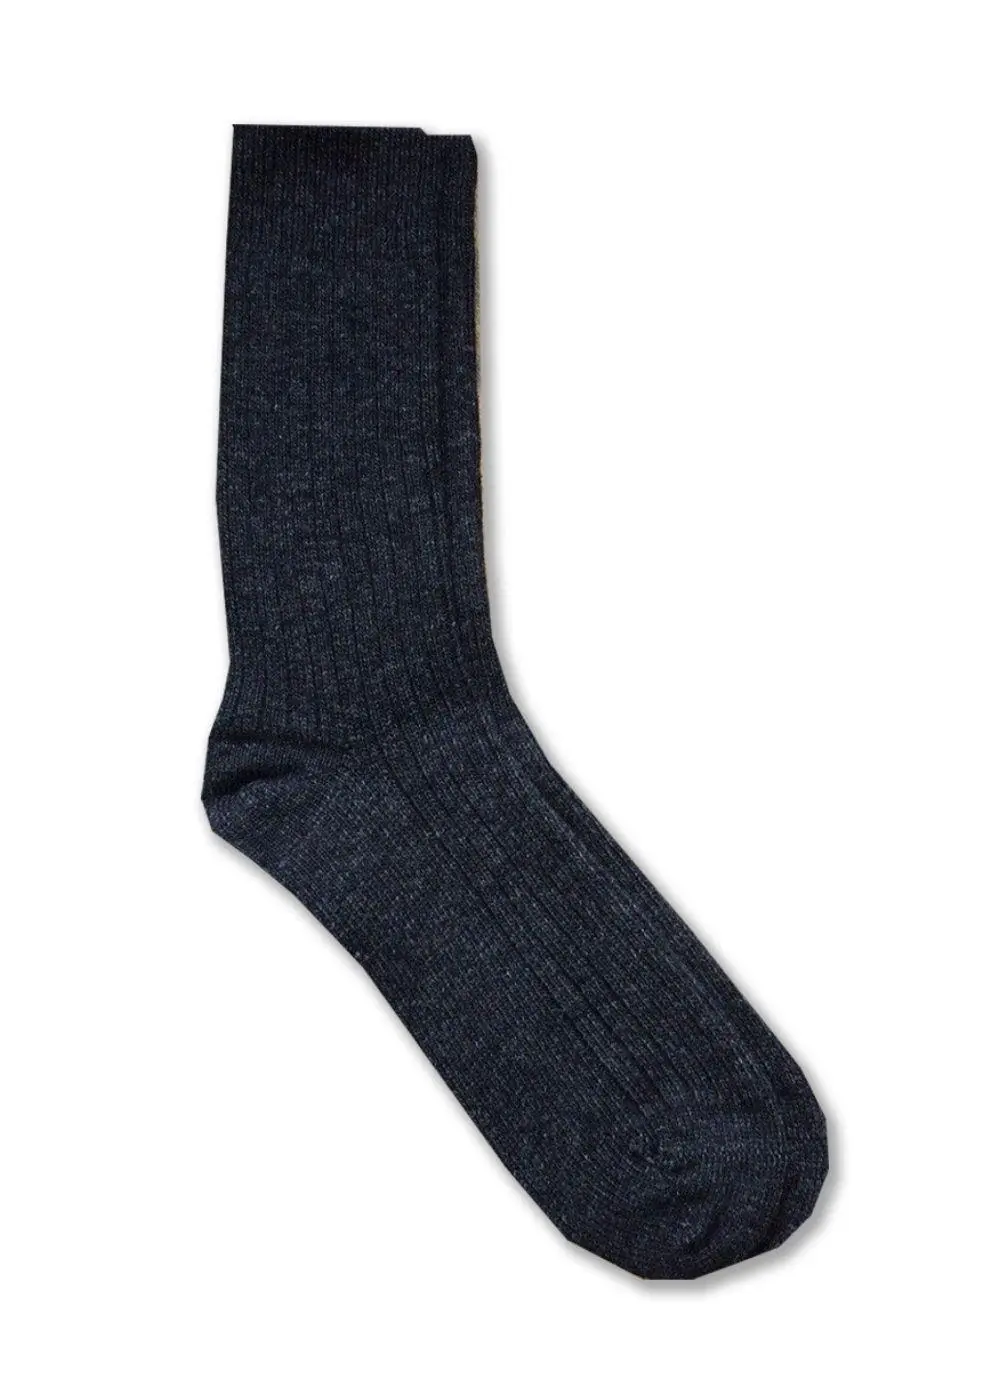 Men's Cozy Cashmere Socks | Blarney